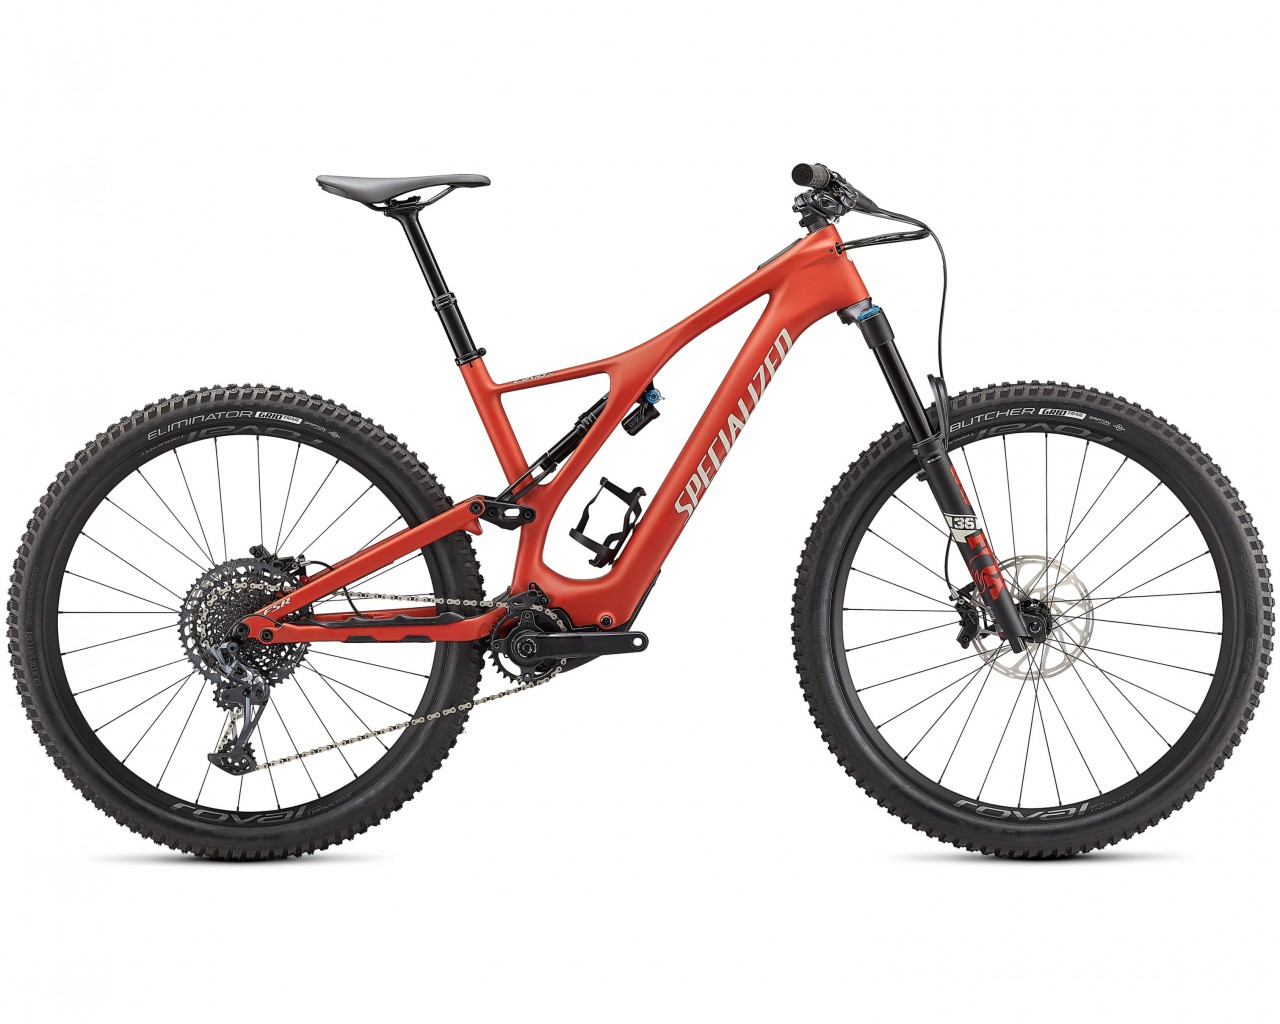 Specialized Levo SL Expert Carbon 29 - Pedelec Carbon Mountain Bike Fullsuspension 2021 | satin redwood-white mountains